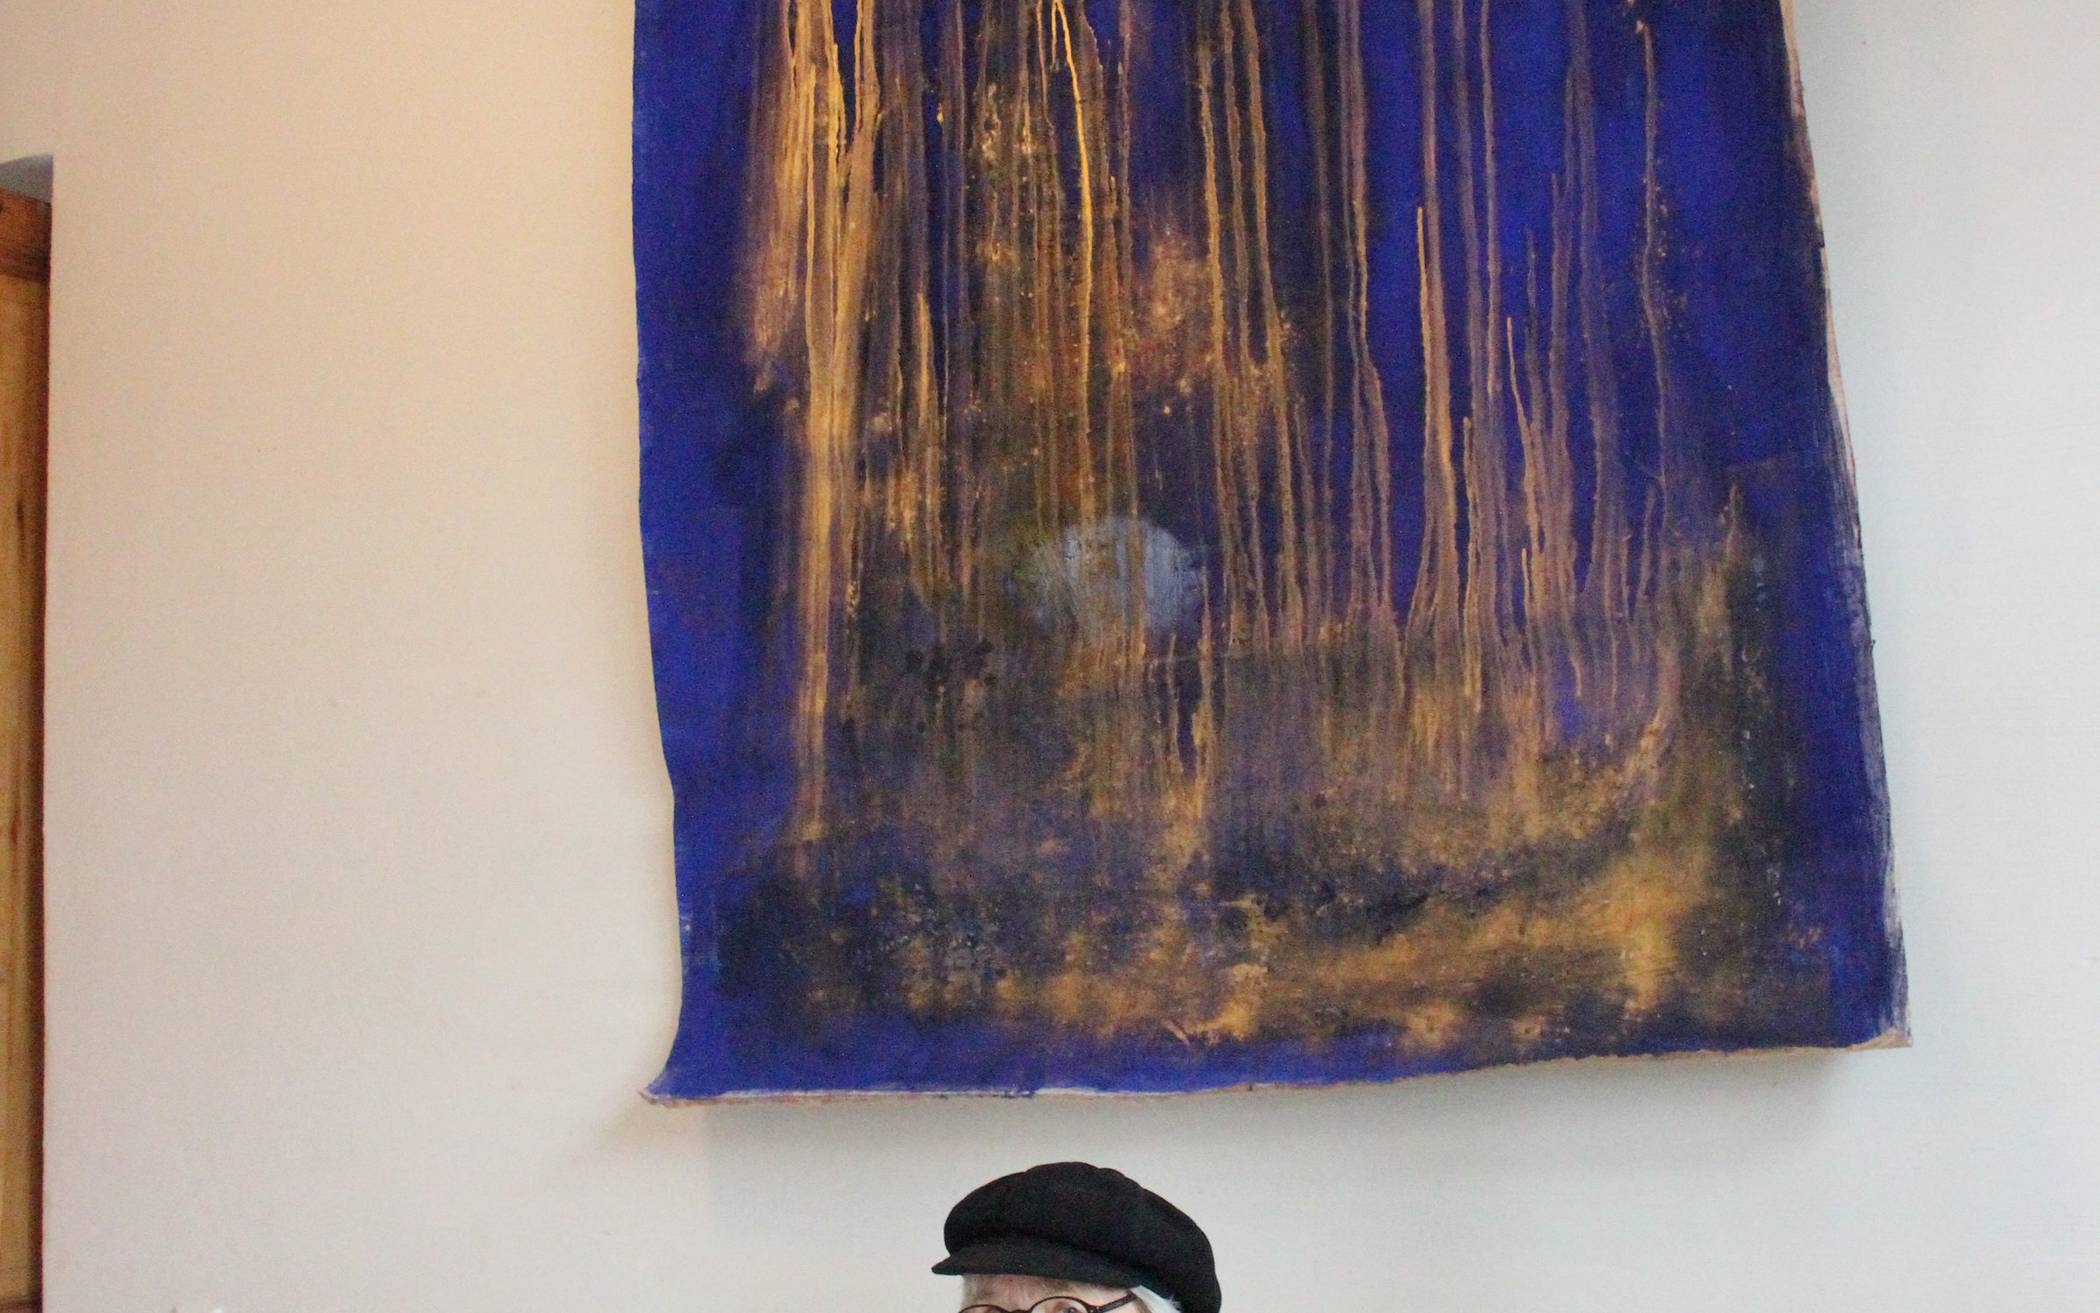  „Die Fähre über den Lethefluss“ - so nennt Beuys-Schüler Uwe Piel sein Gemälde. 